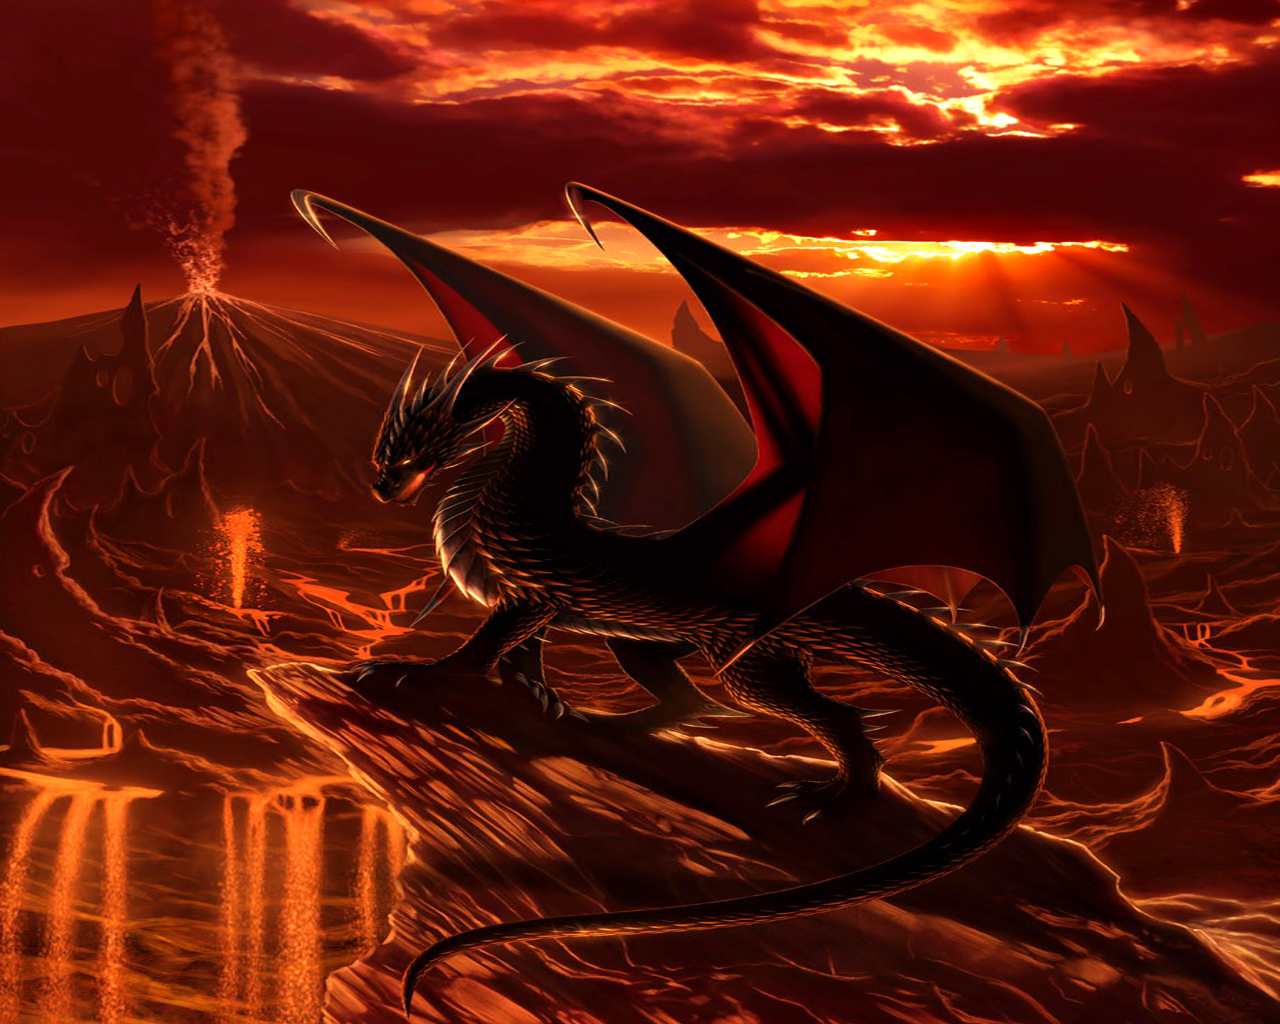 赤いドラゴンの壁紙,ドラゴン,cgアートワーク,架空の人物,神話上の生き物,神話